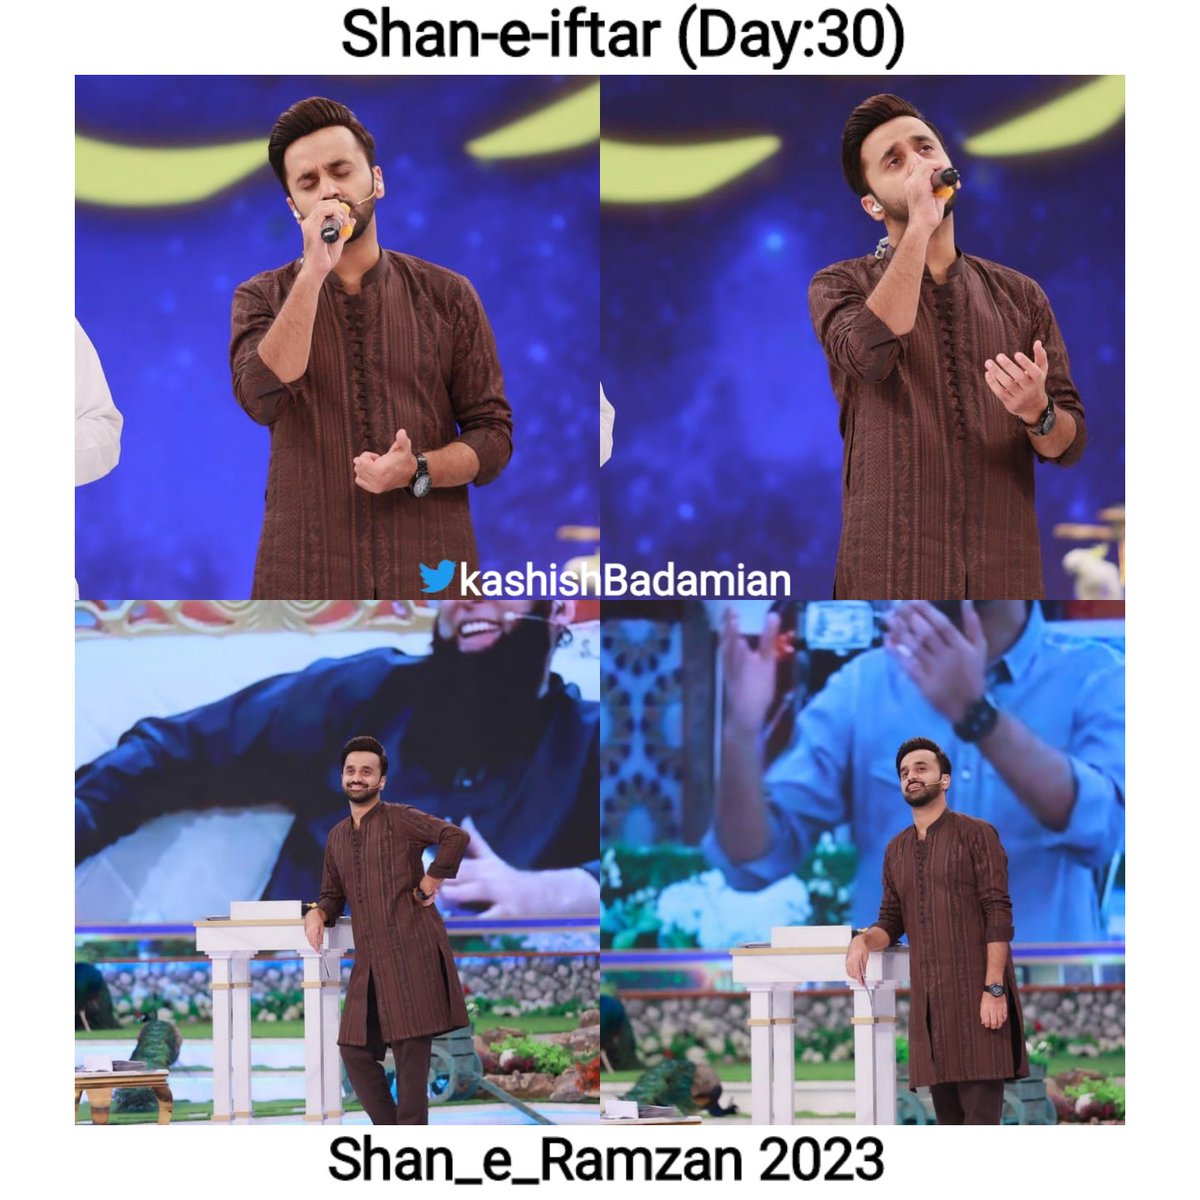 Shan-e-sehr (Day:30)✨
Shan-e-iftar (Day:30)✨

@WaseemBadami 
#ShaneRamzan
#ShaneRamzan2023